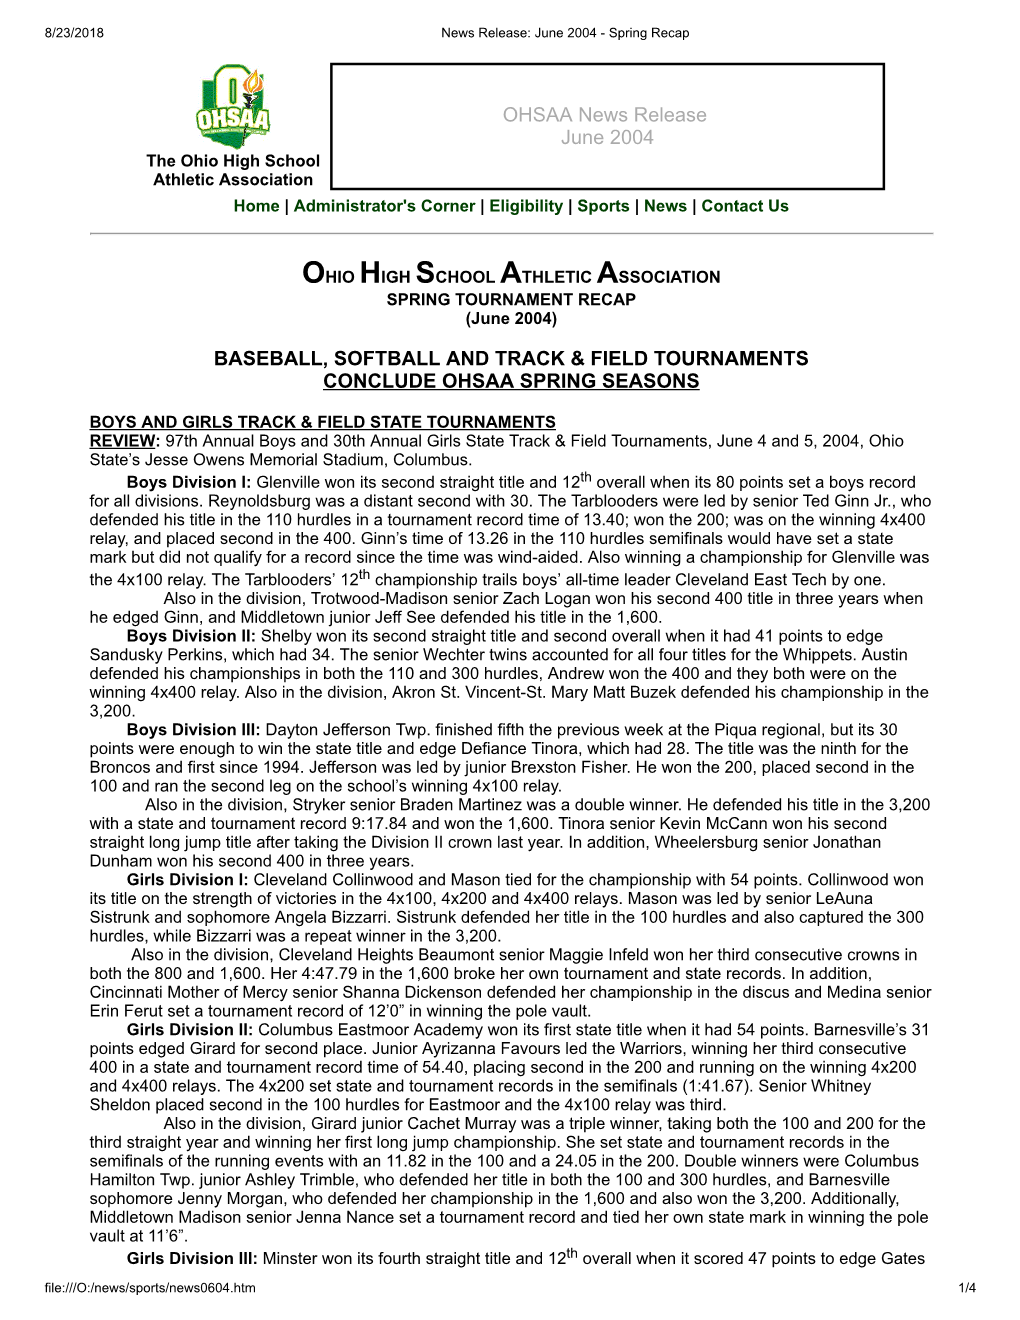 OHSAA News Release June 2004 BASEBALL, SOFTBALL AND